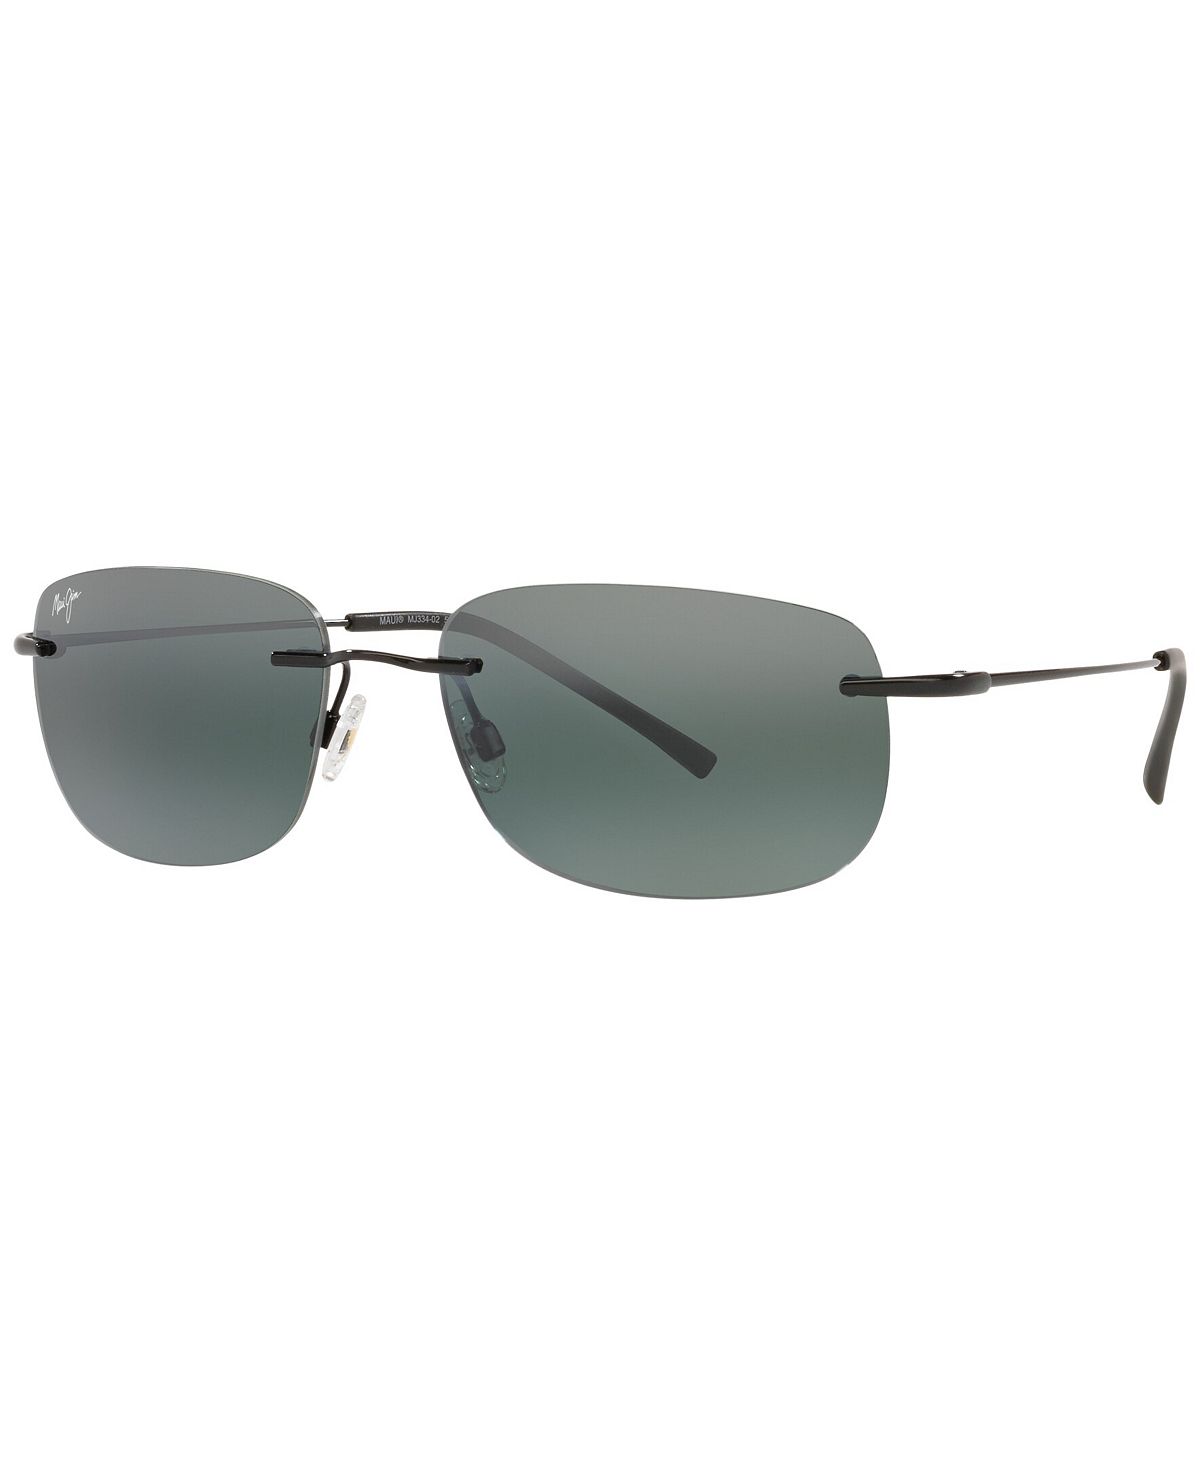 Поляризованные солнцезащитные очки унисекс, MJ000670 Ohai 59 Maui Jim, черный цена и фото